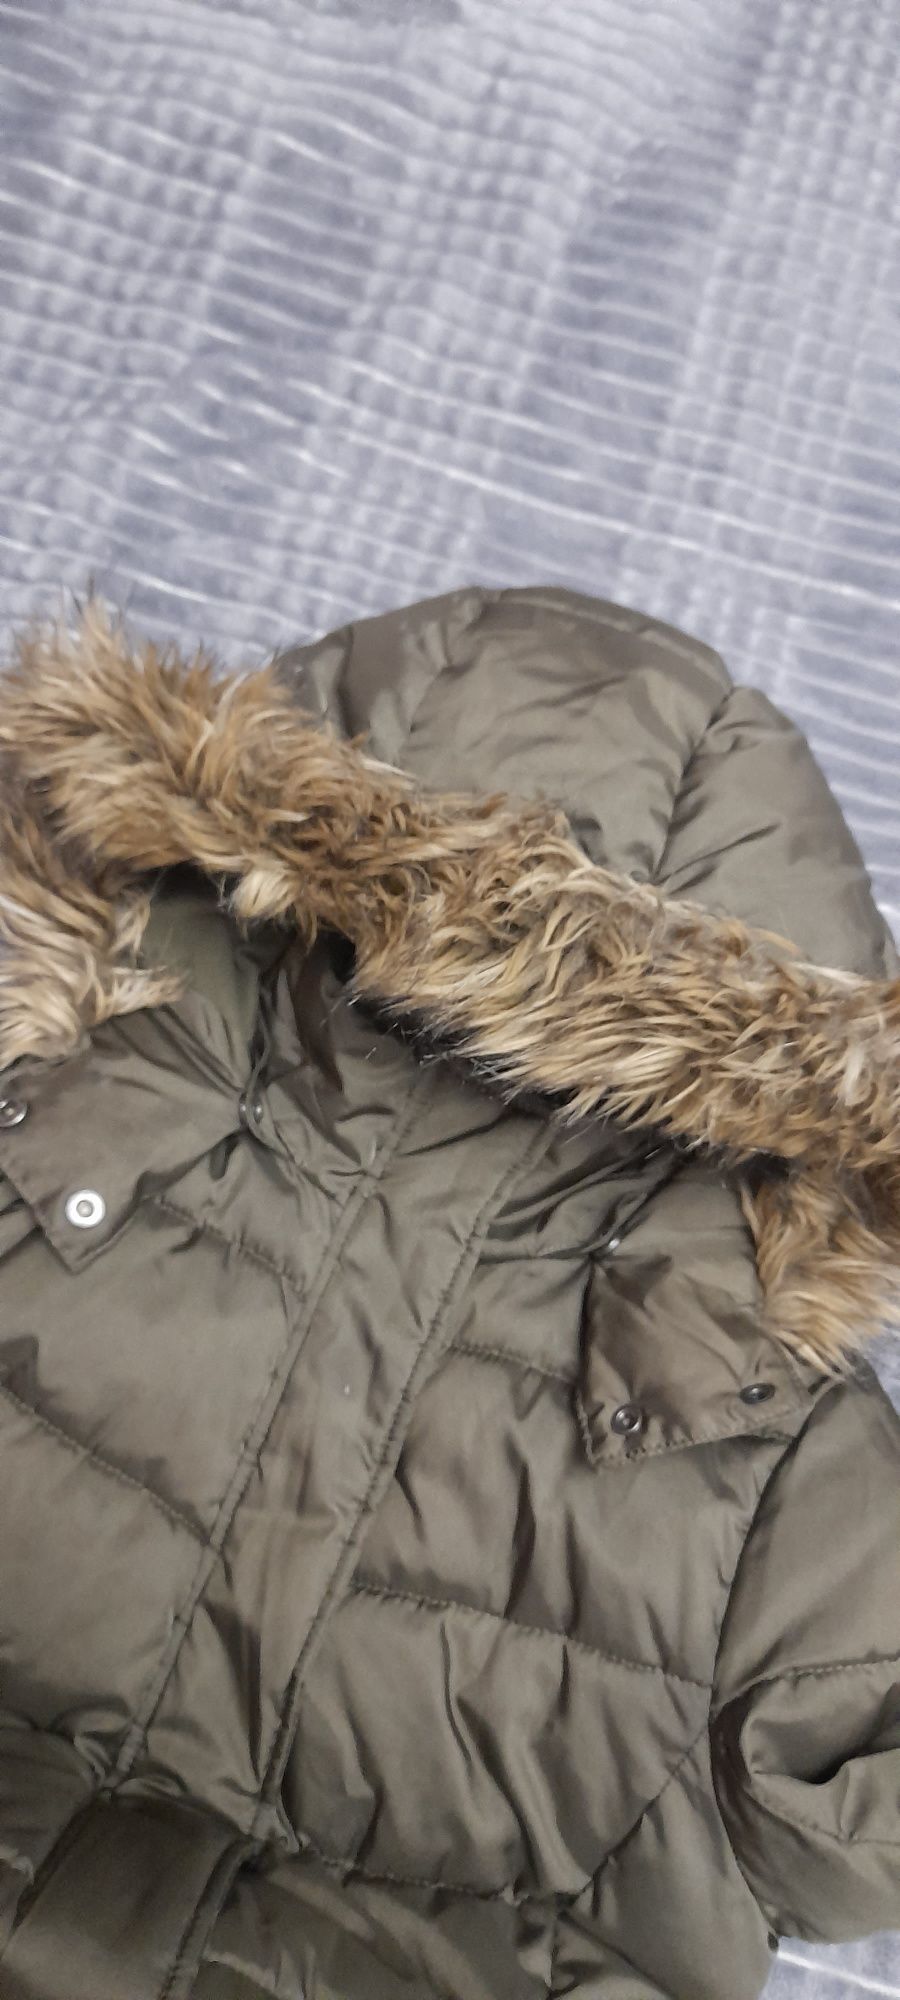 Kurtka zimowa, płaszczyk parka H&M 164cm,13-14 lat khaki jak nowa